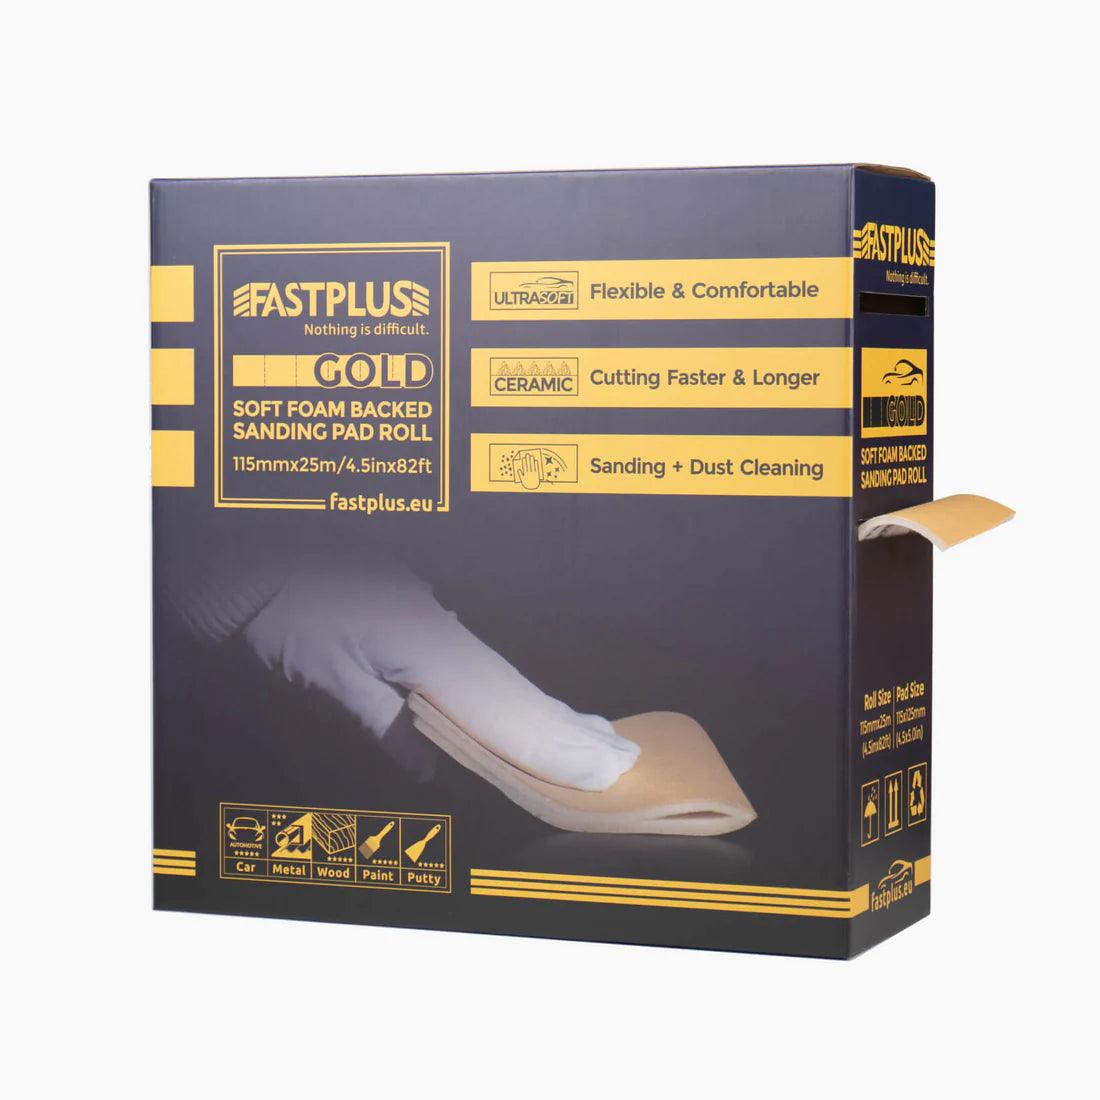 Foam Sanding Pad Roll, Schaumstoff-Schleifpapier-Rollen Flex-ultra Soft Handpad 115mmx25m – Gold Fastplus FSR6